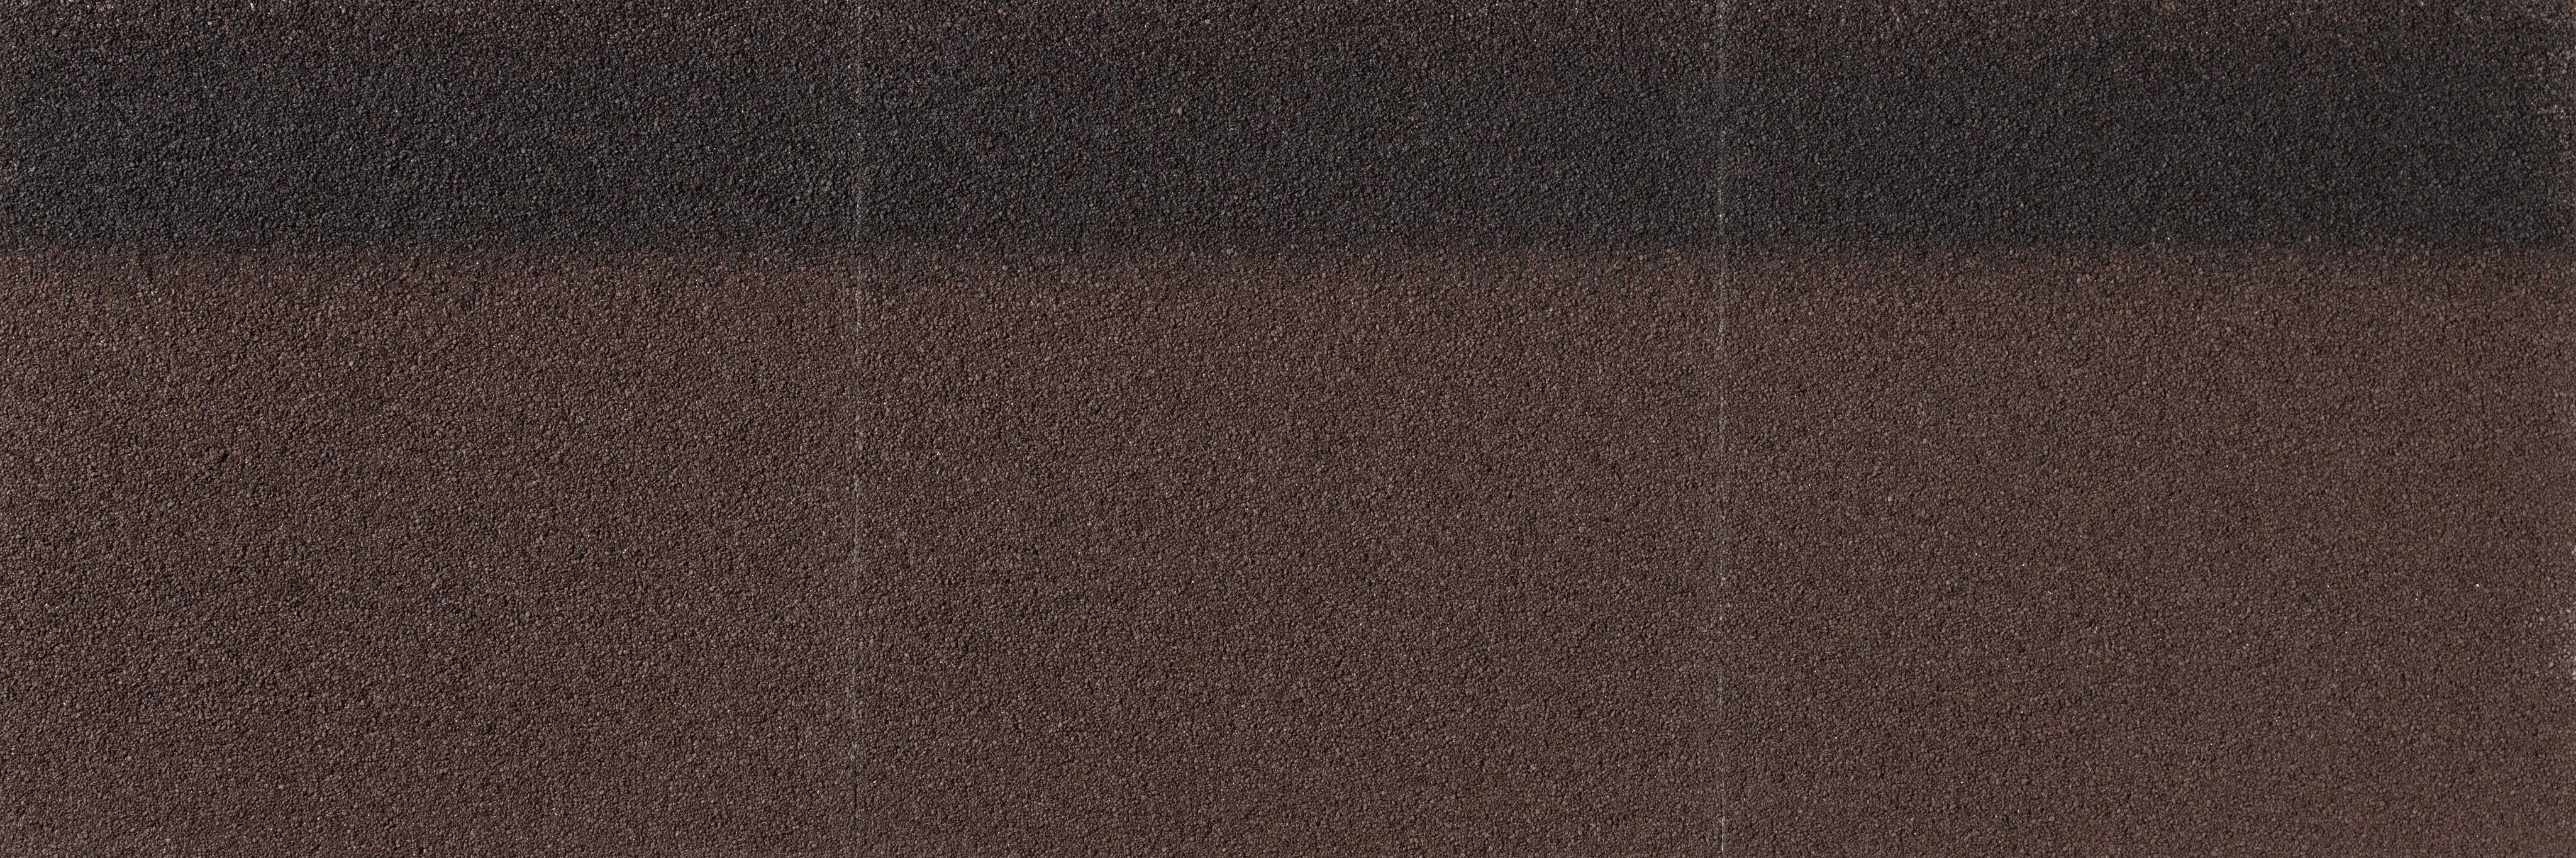 Конек-карниз Quiet tile Brick 16.8/20м.п, тёмное дерево 